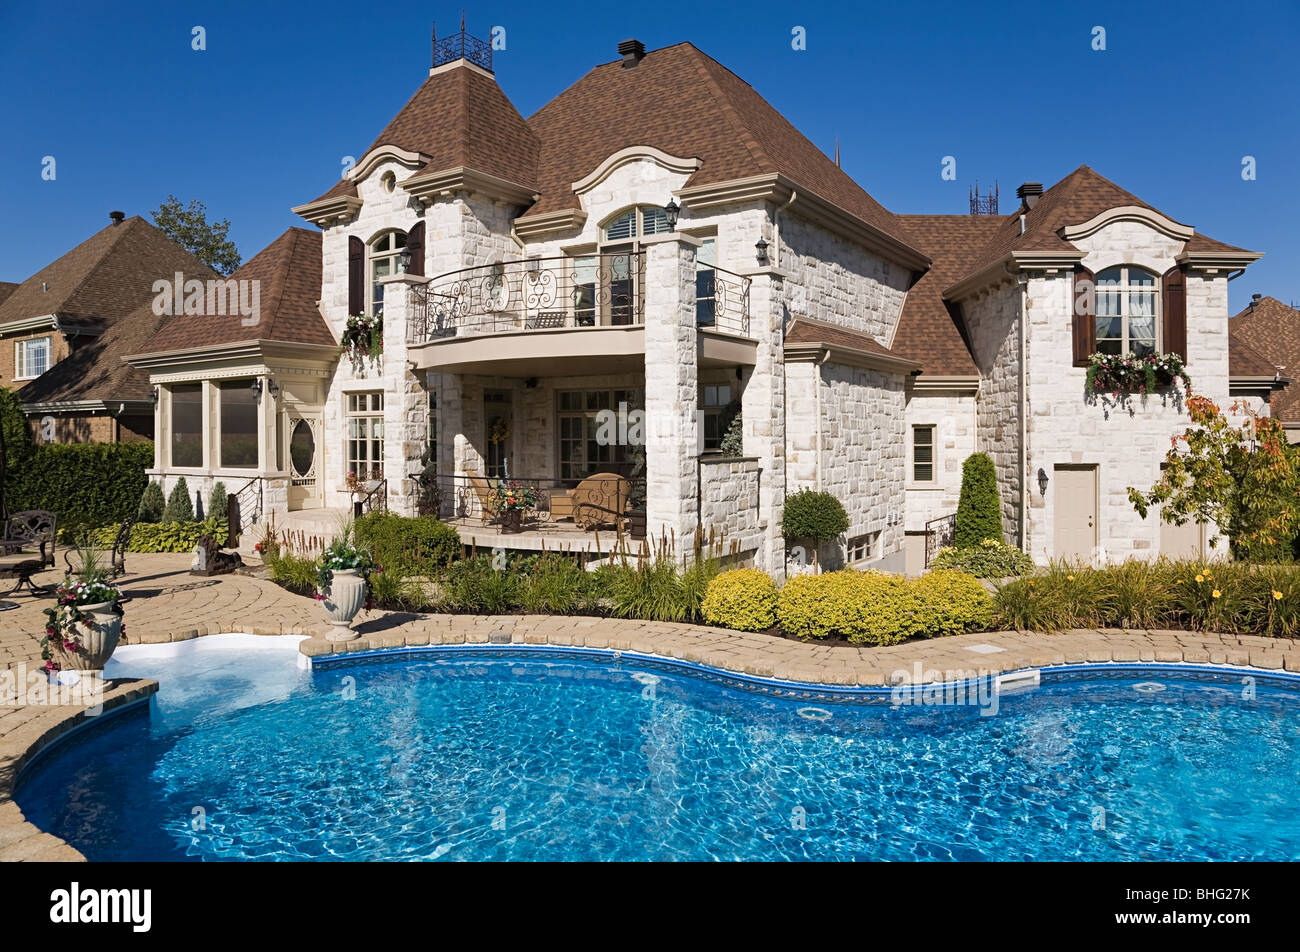 Gran casa con piscina Foto de stock